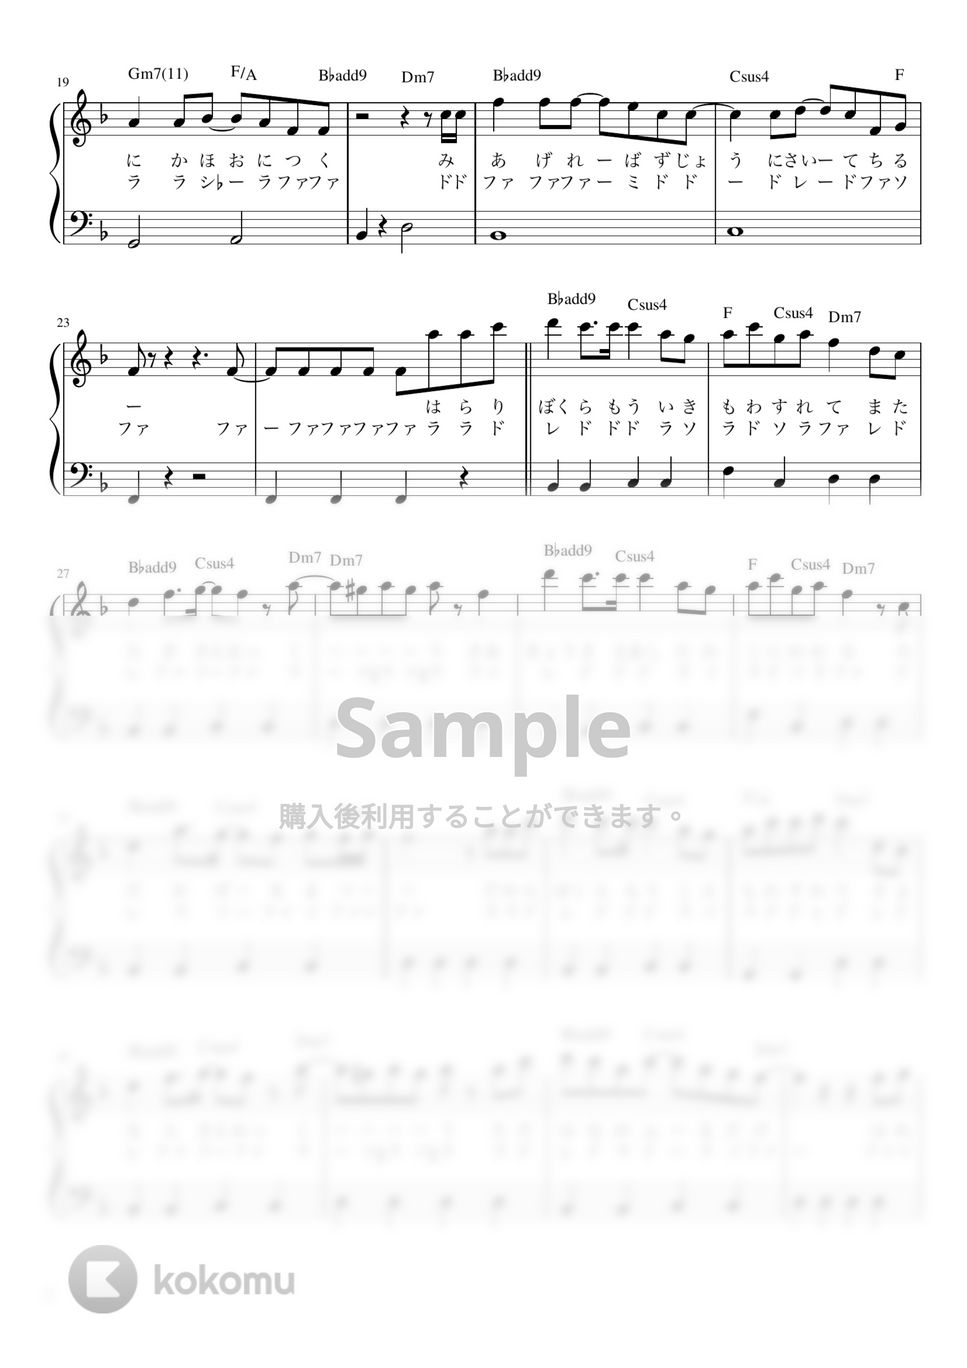 ヨルシカ - 春泥棒 (かんたん / 歌詞付き / ドレミ付き / 初心者) by piano.tokyo